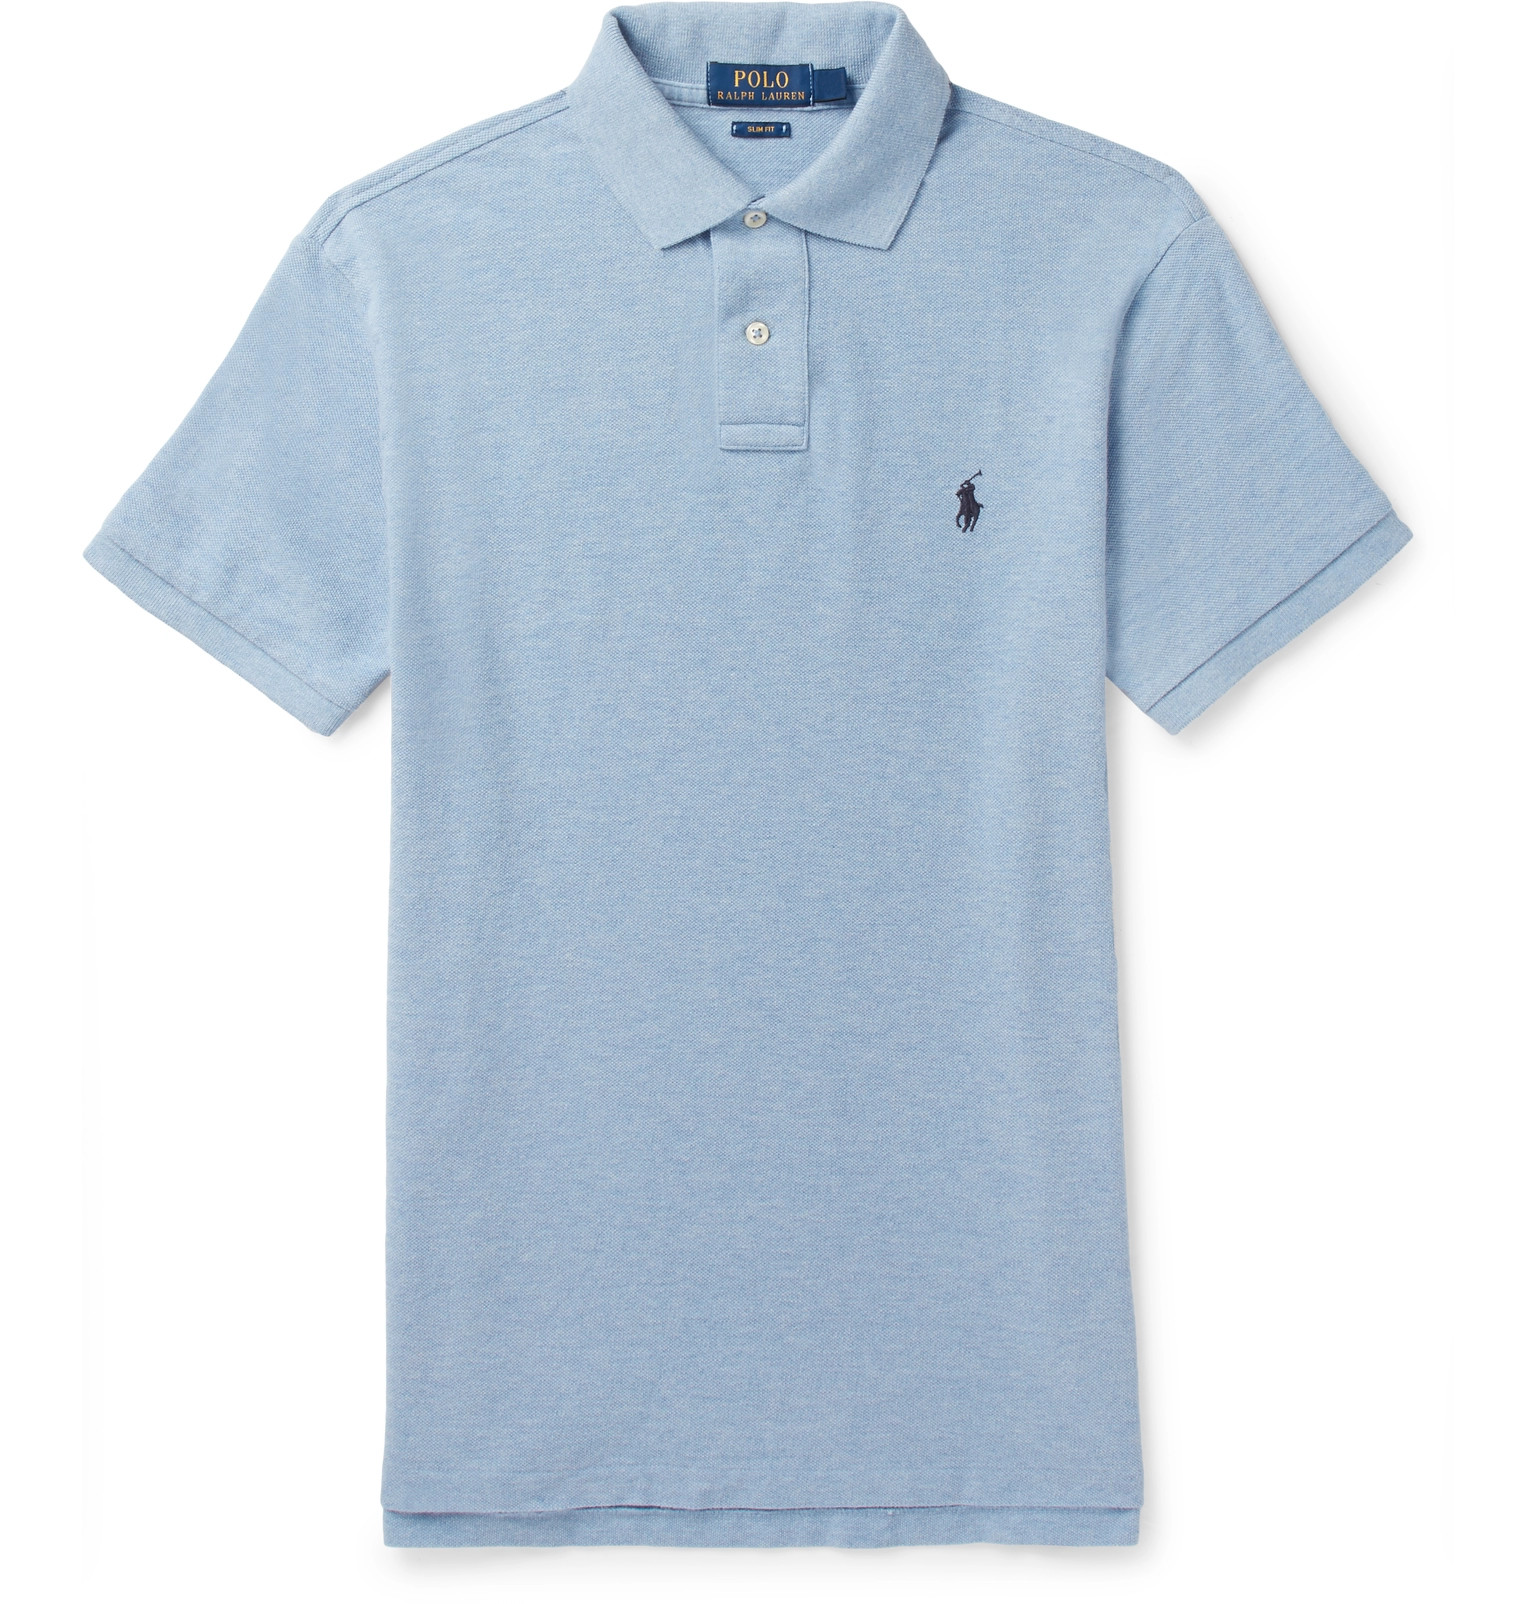 men's blue ralph lauren polo shirt